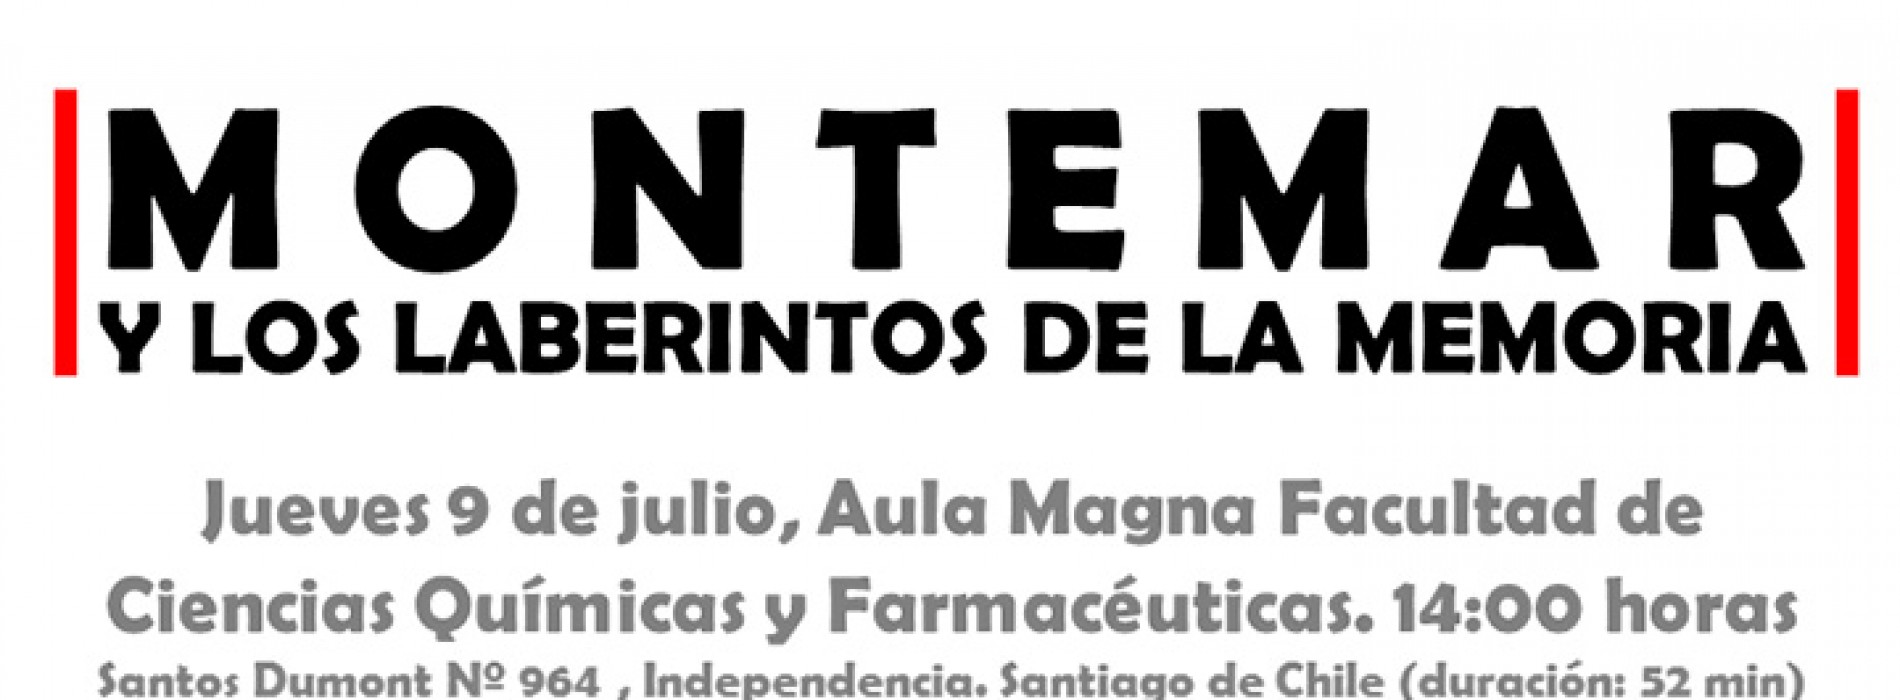 Documental sobre Montemar, Universidad de Chile – jueves 9 de Julio a las 14:00 hrs.